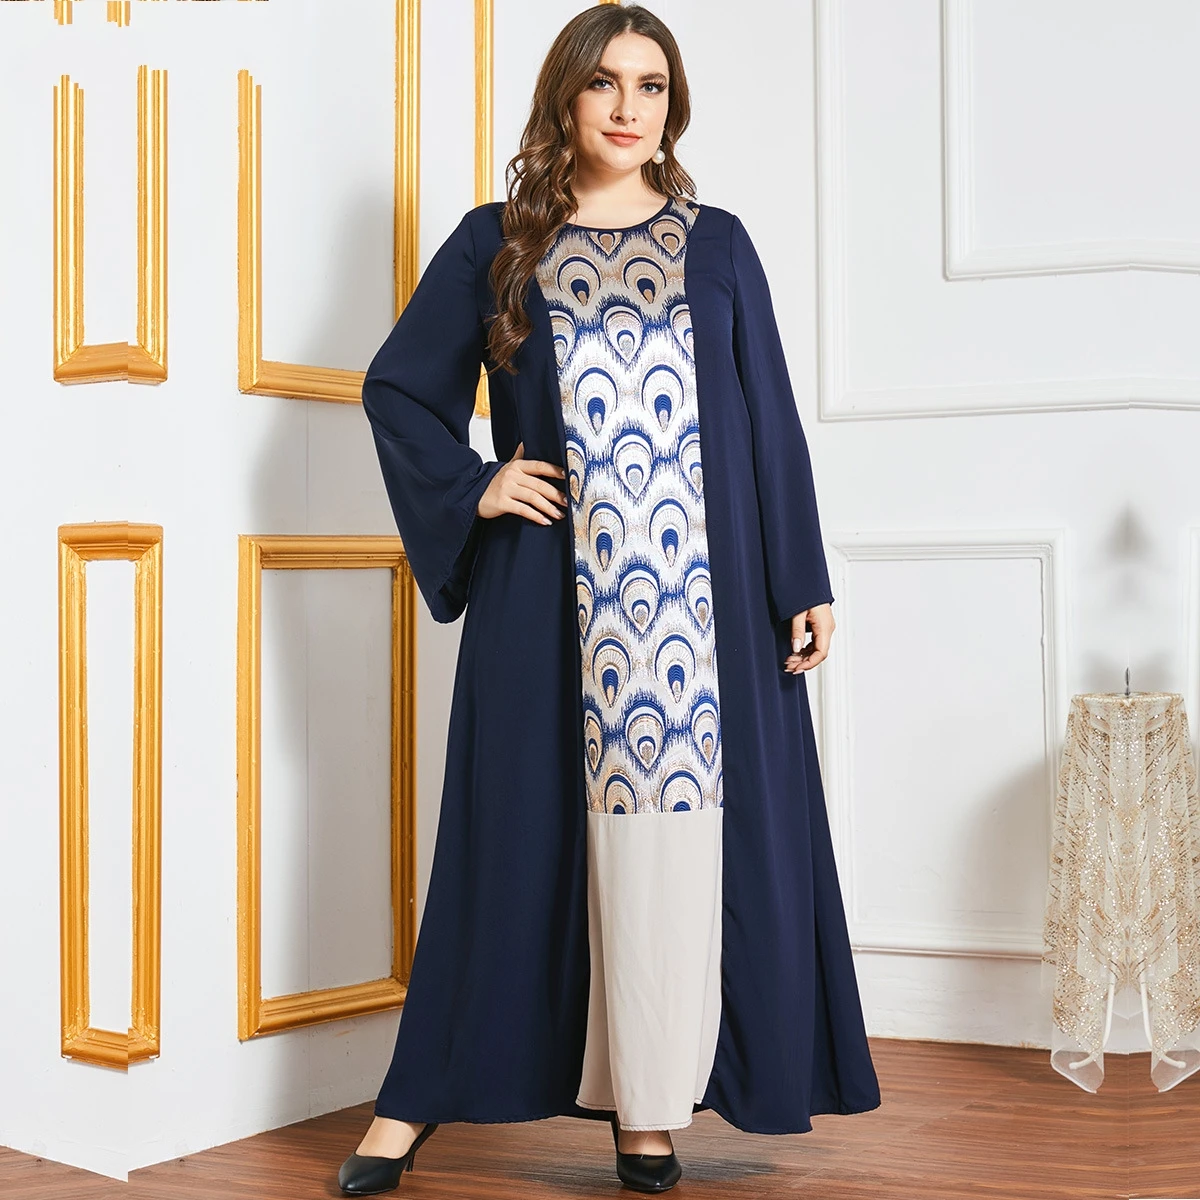 

Рамадан ИД абайя Дубай Саудовская Аравия мусульманское платье Турция ислам одежда платья для женщин Vestido De Mujer длинное арабское платье